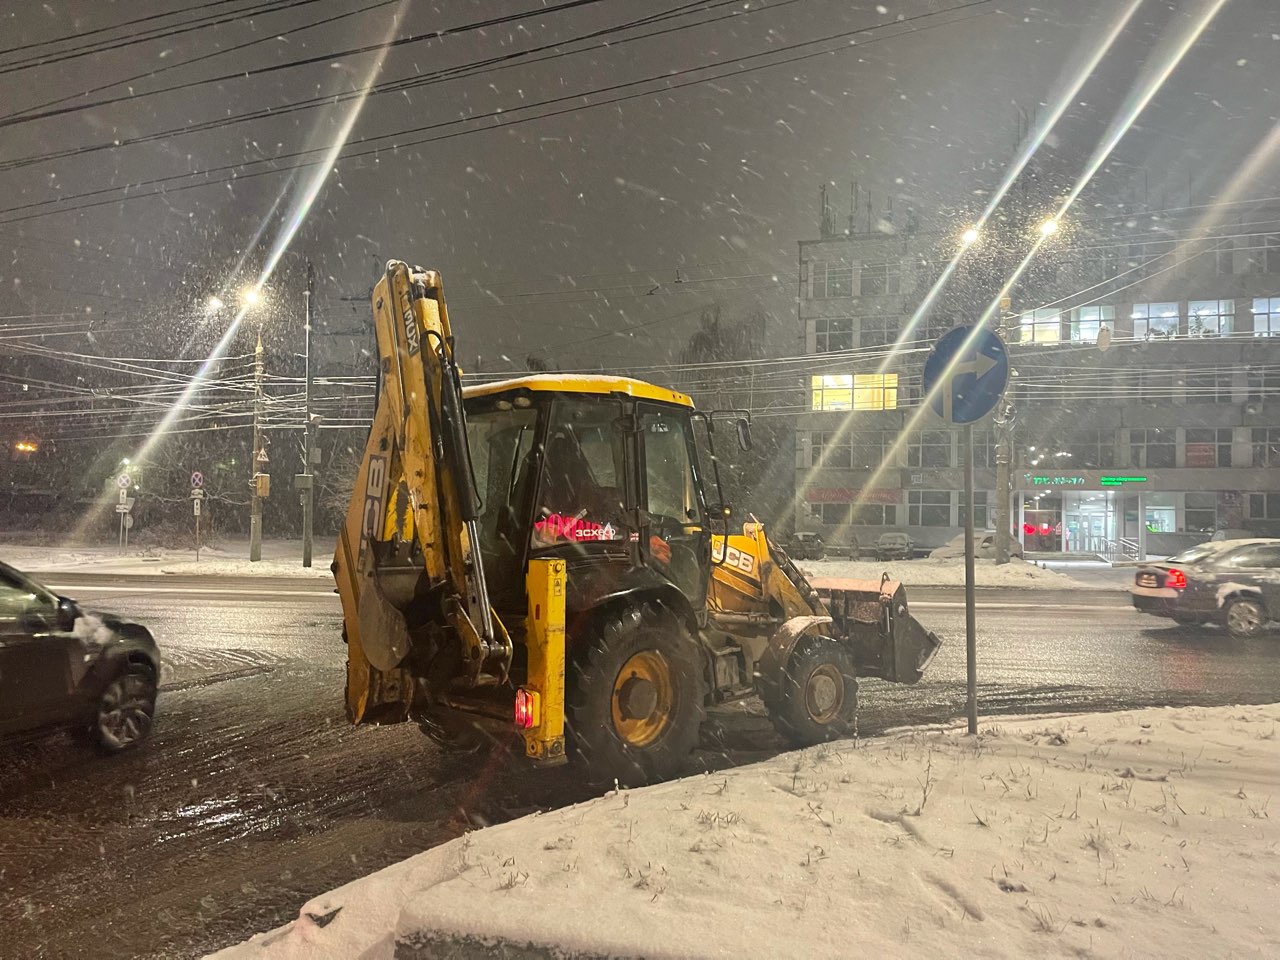 Мэрия Нижнего Новгорода закупит 90 снегоуборочных машин до конца года  - фото 1